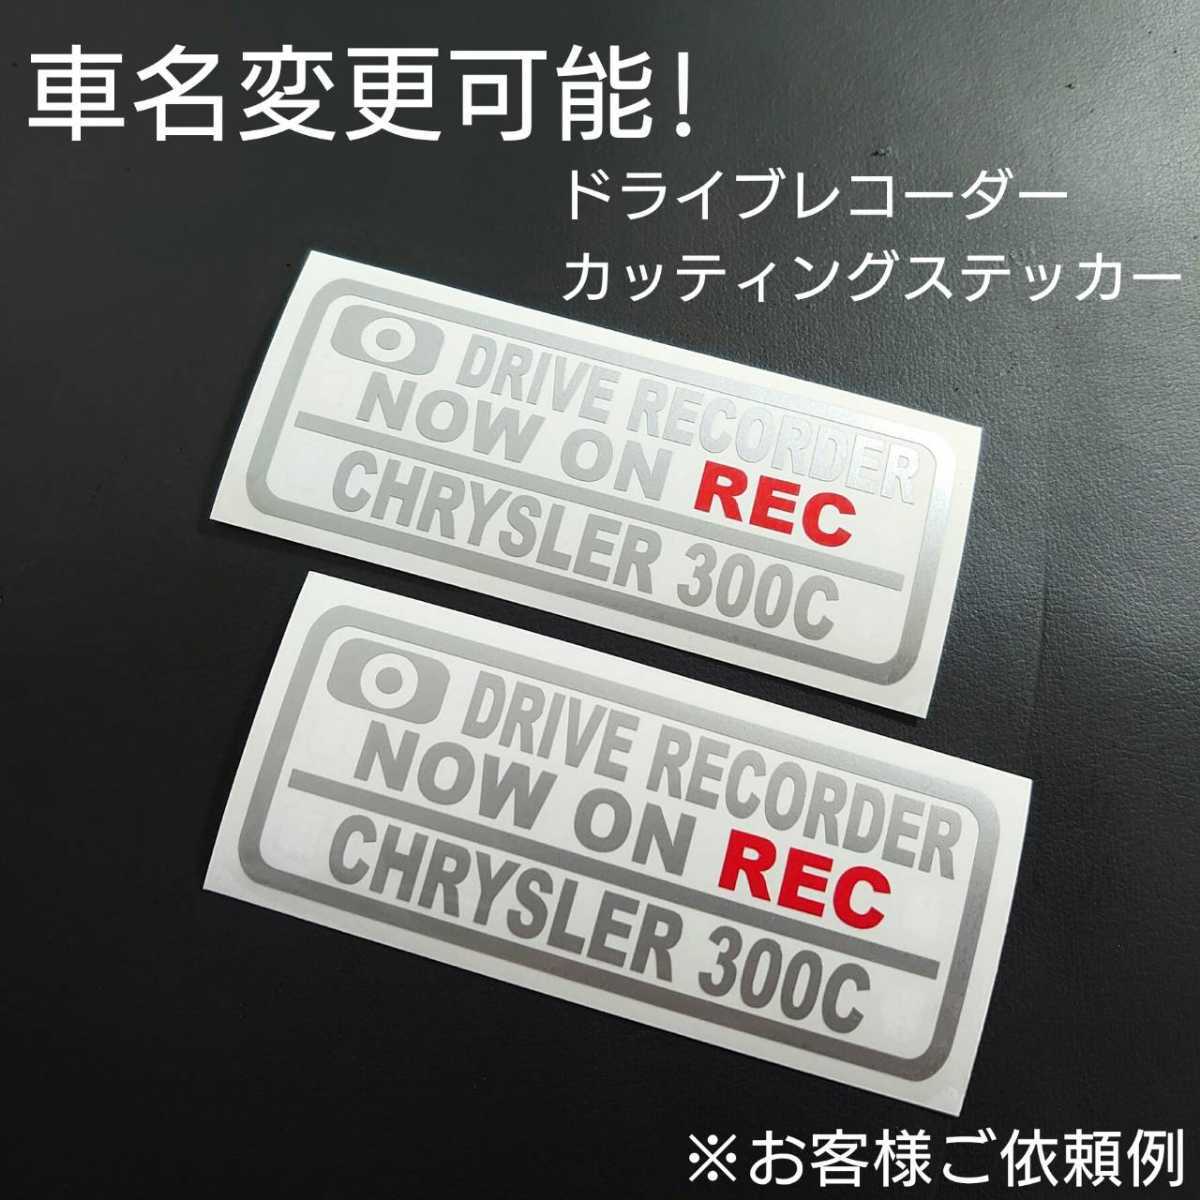 車名変更可能【ドライブレコーダー】カッティングステッカー2枚セット(CHRYSLER 300C)(シルバー/レッド)_画像1